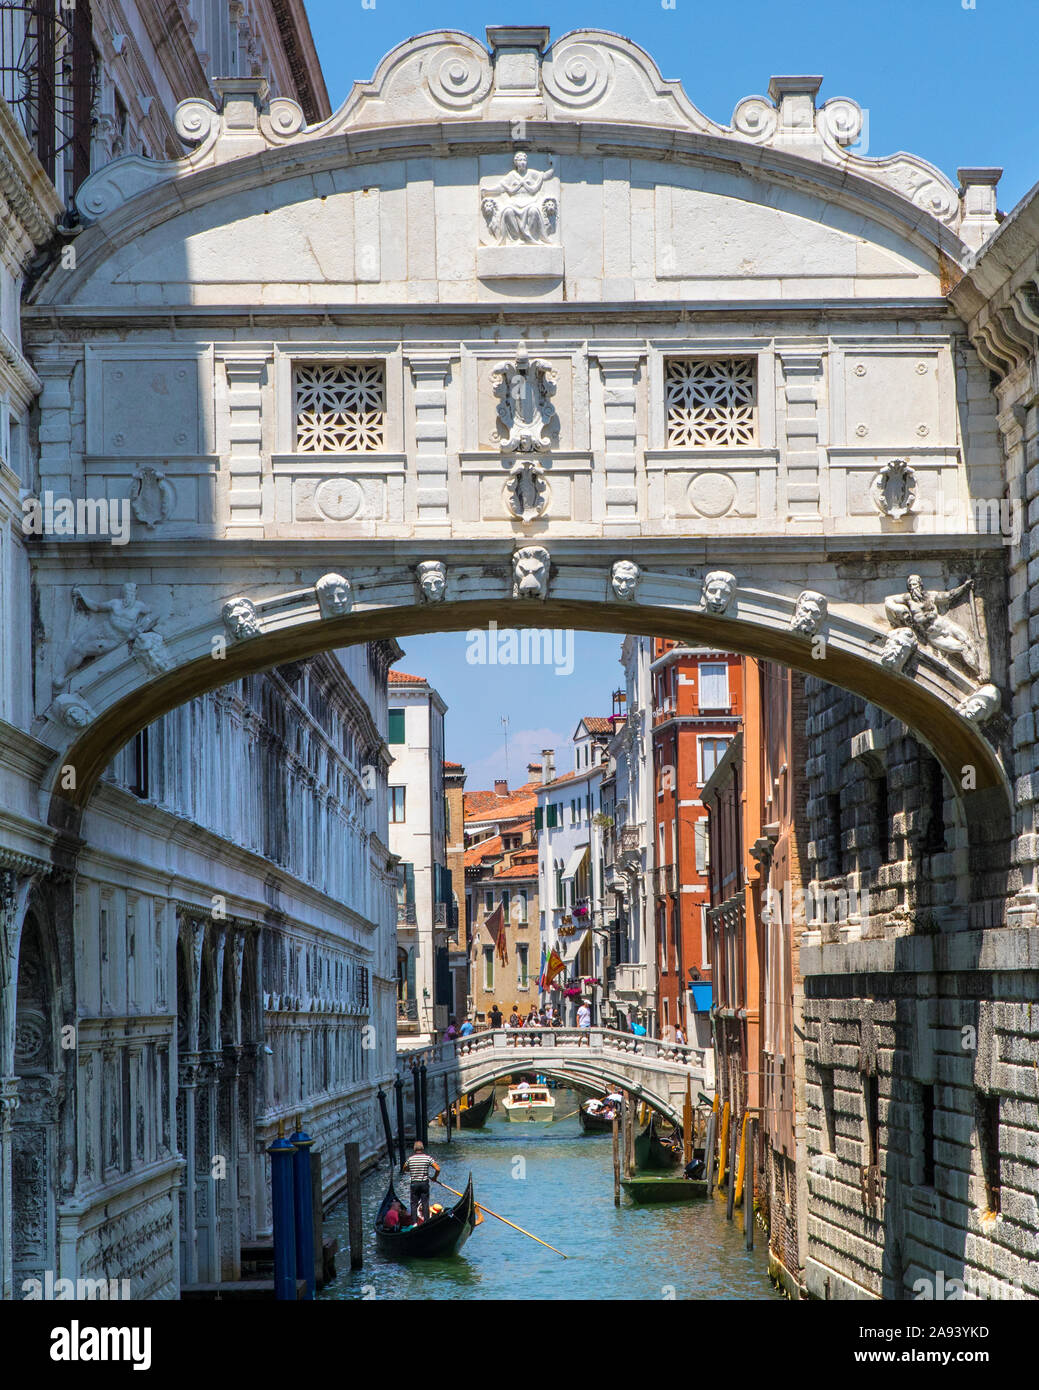 Venise, Italie - 20 juillet 2019 : une vue sur le célèbre Pont des Soupirs dans la ville de Venise, Italie. Banque D'Images